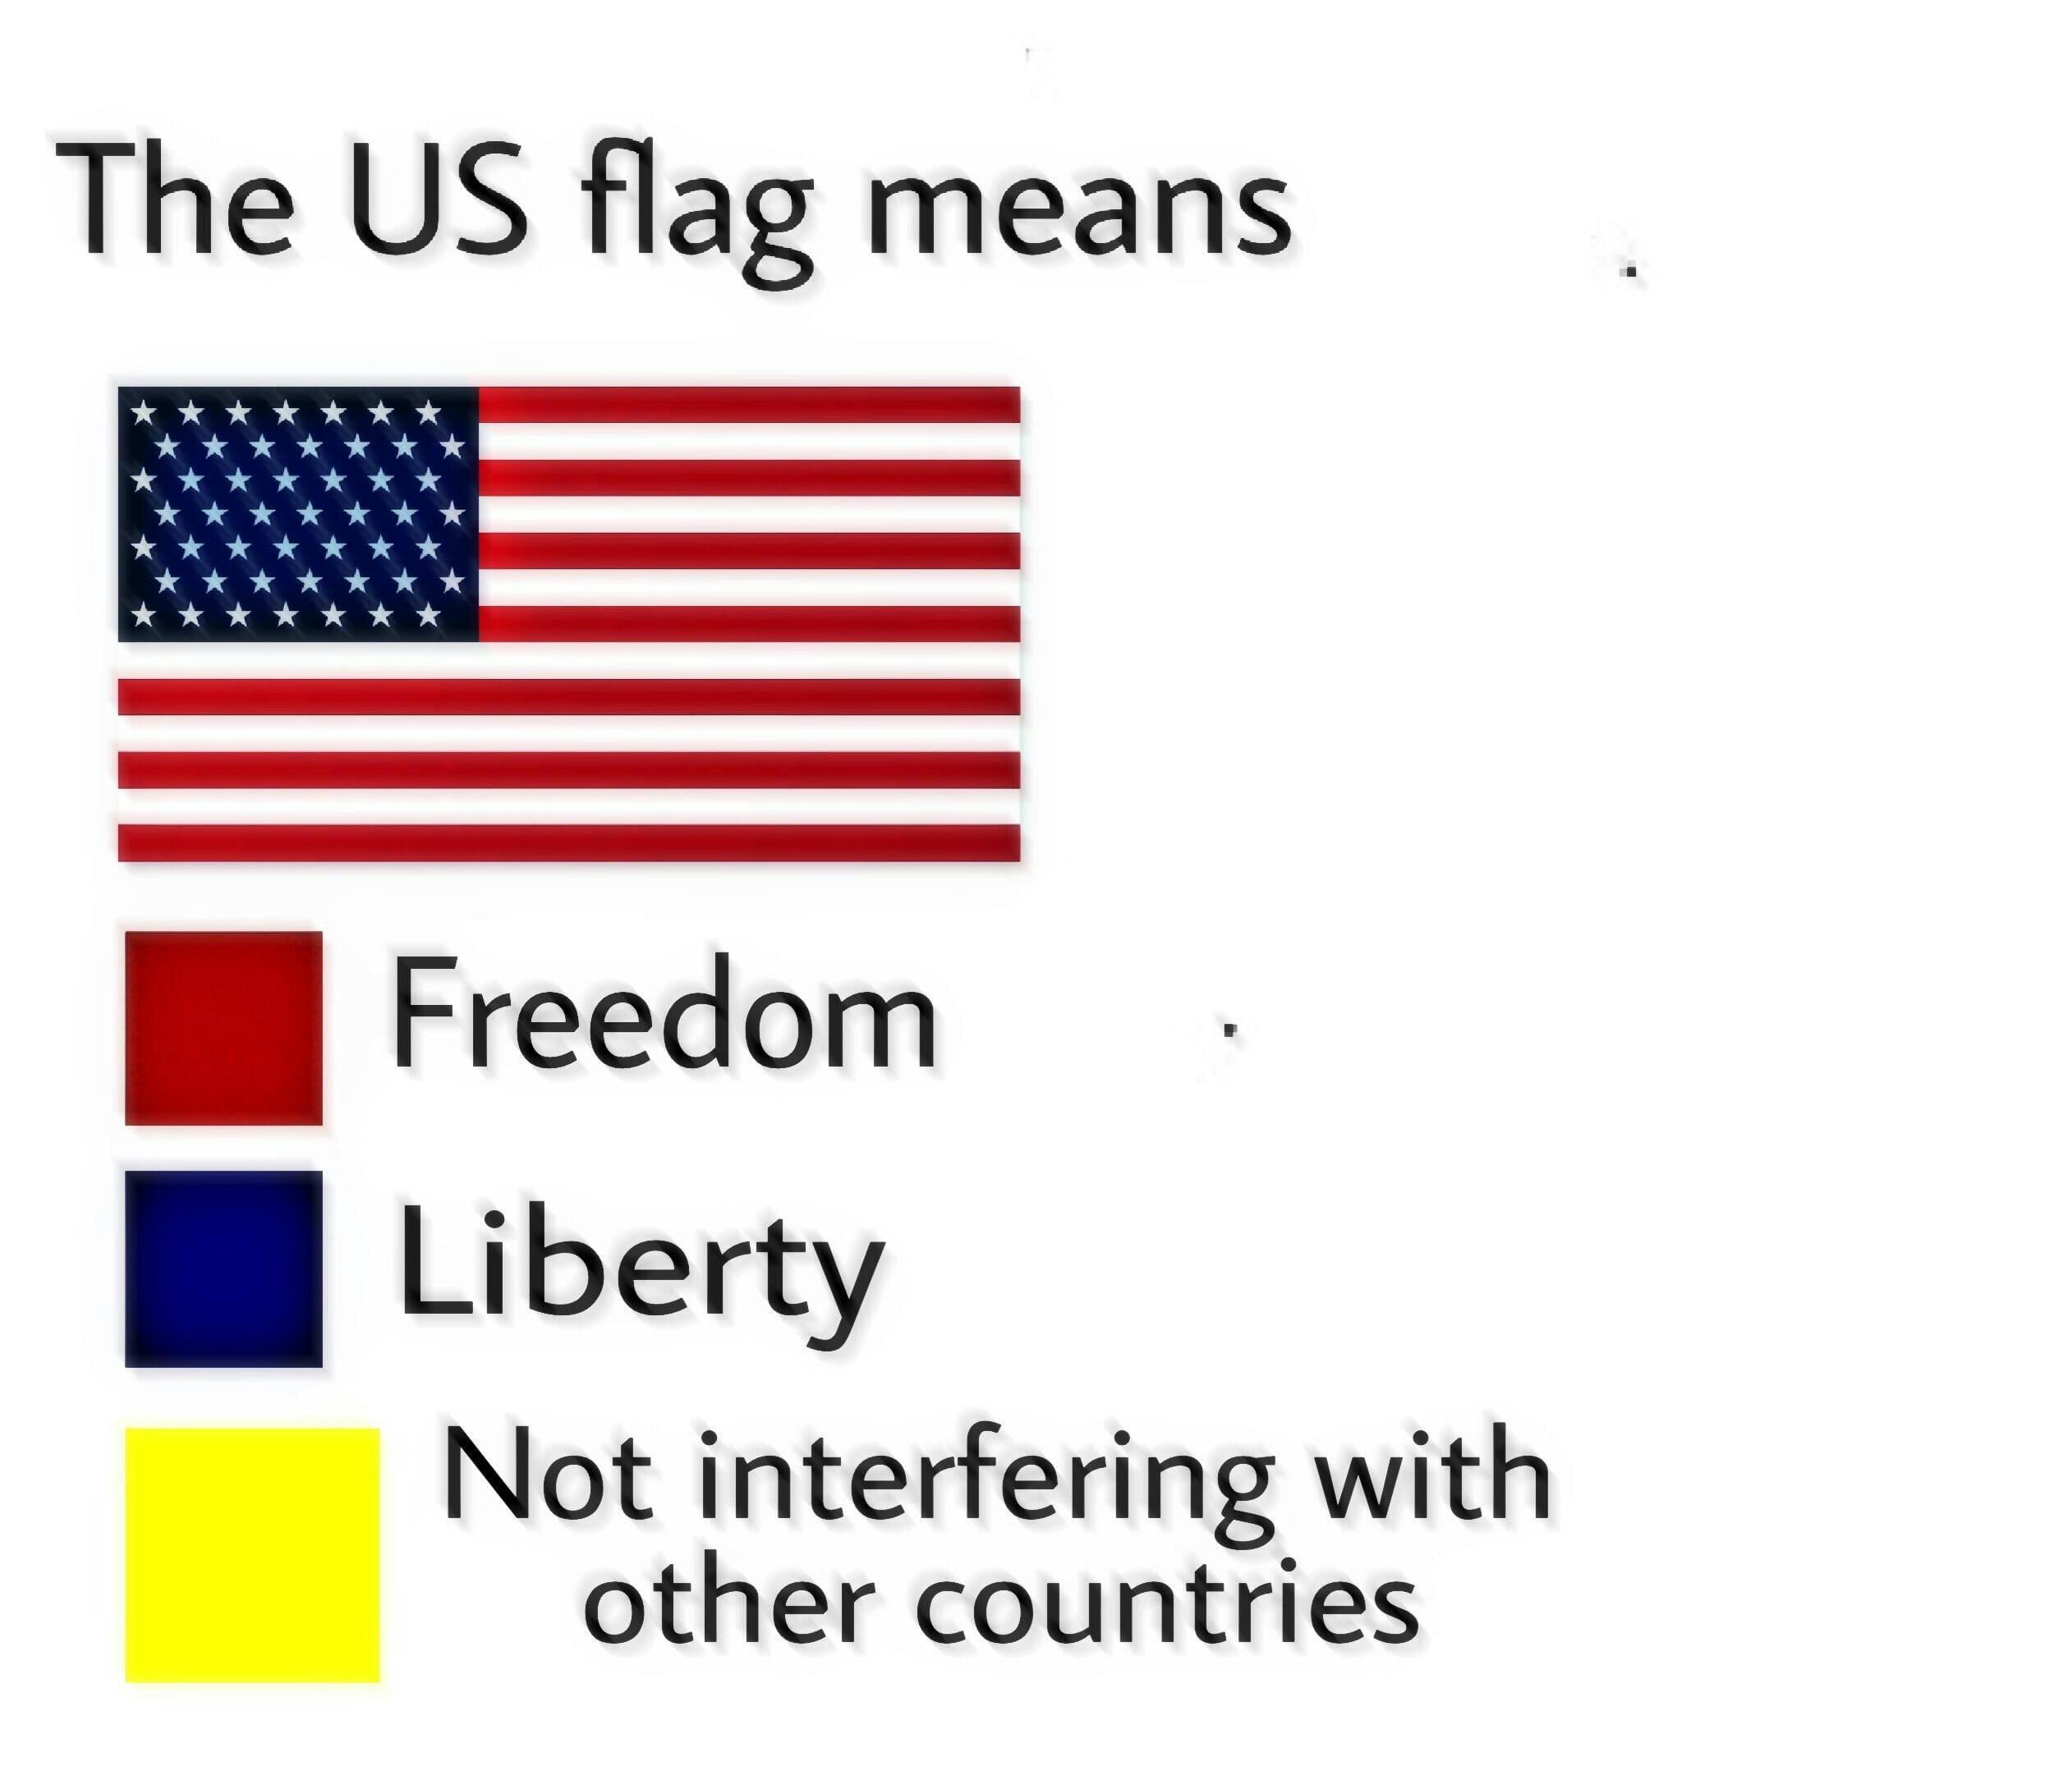 u.s. flag meme